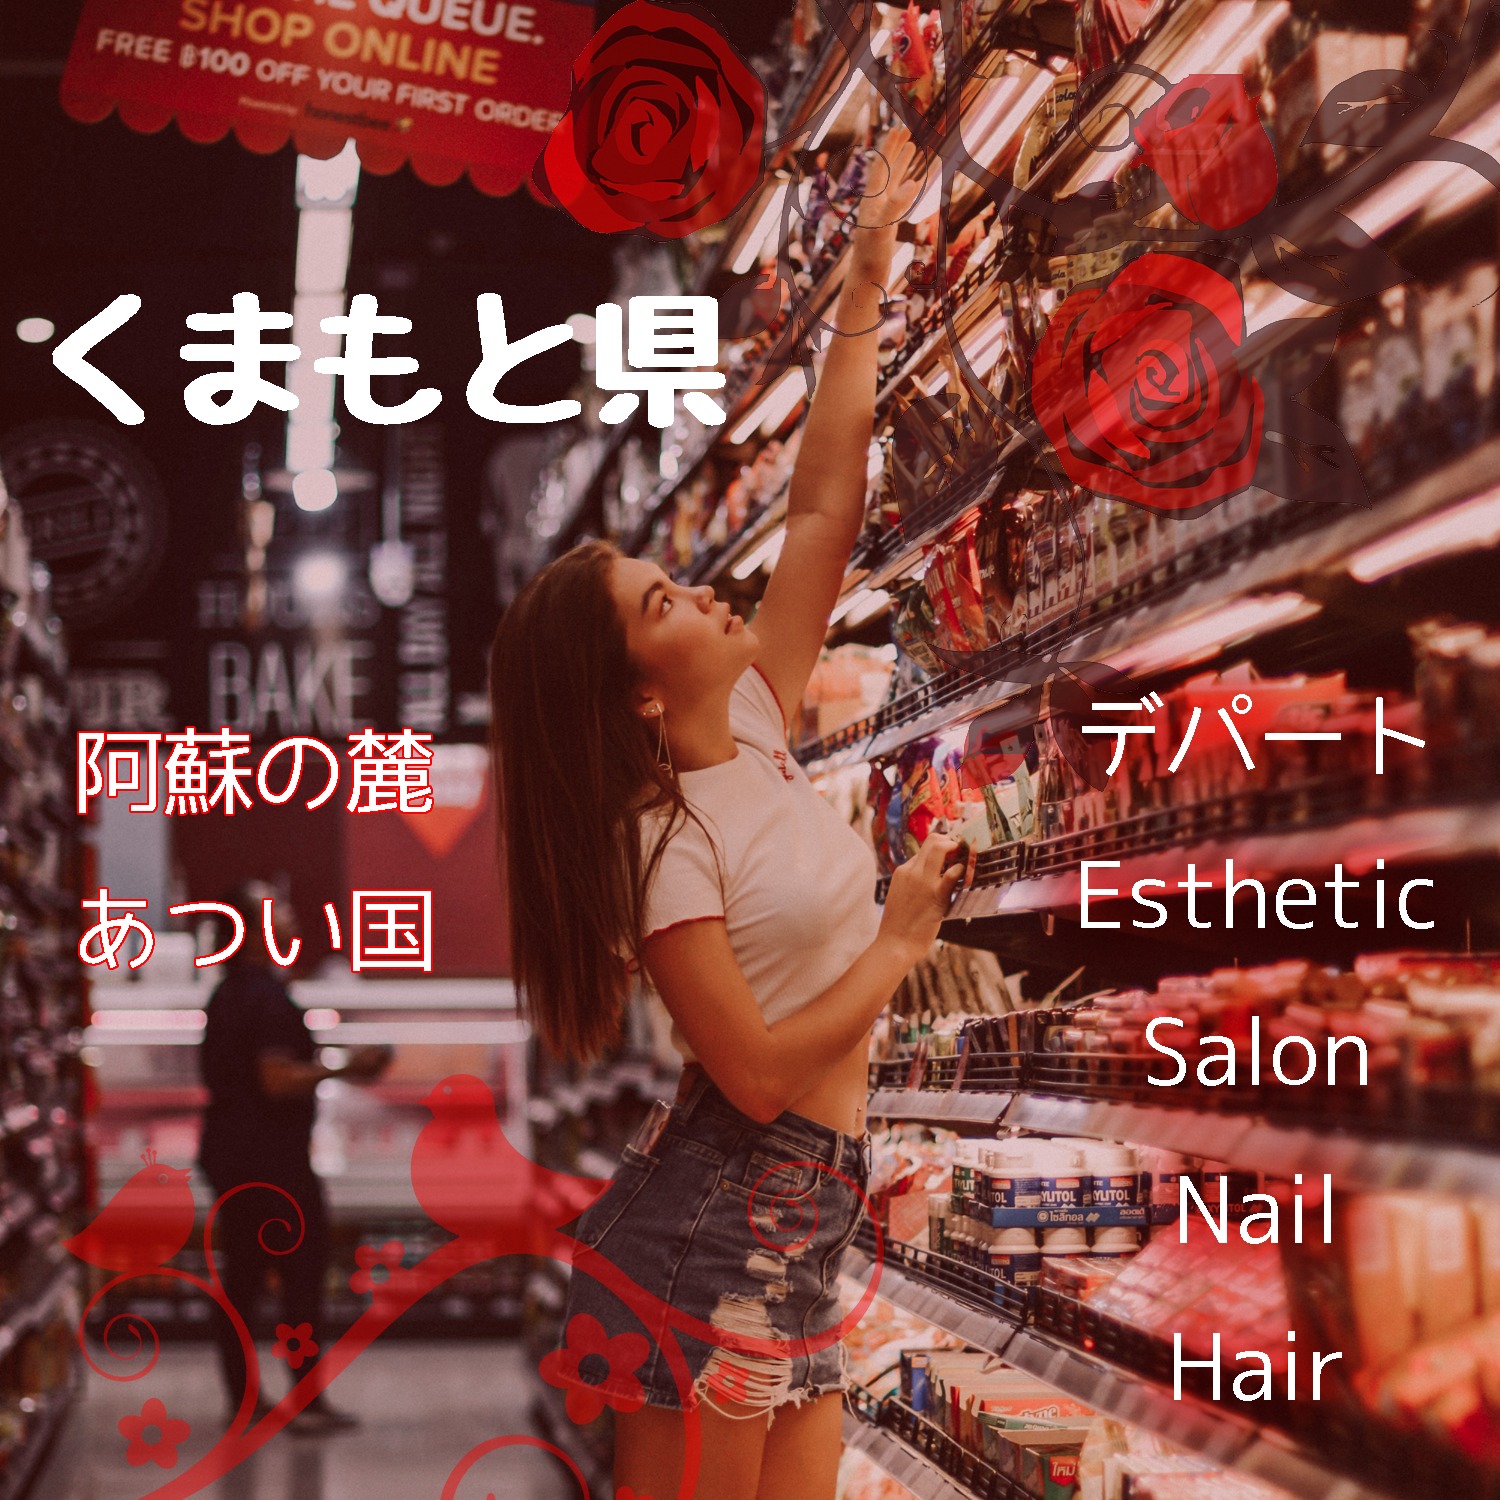 【イオン系列が多い？】熊本県でデパコスブランドが安い口コミがおすすめのコスメショップを探す